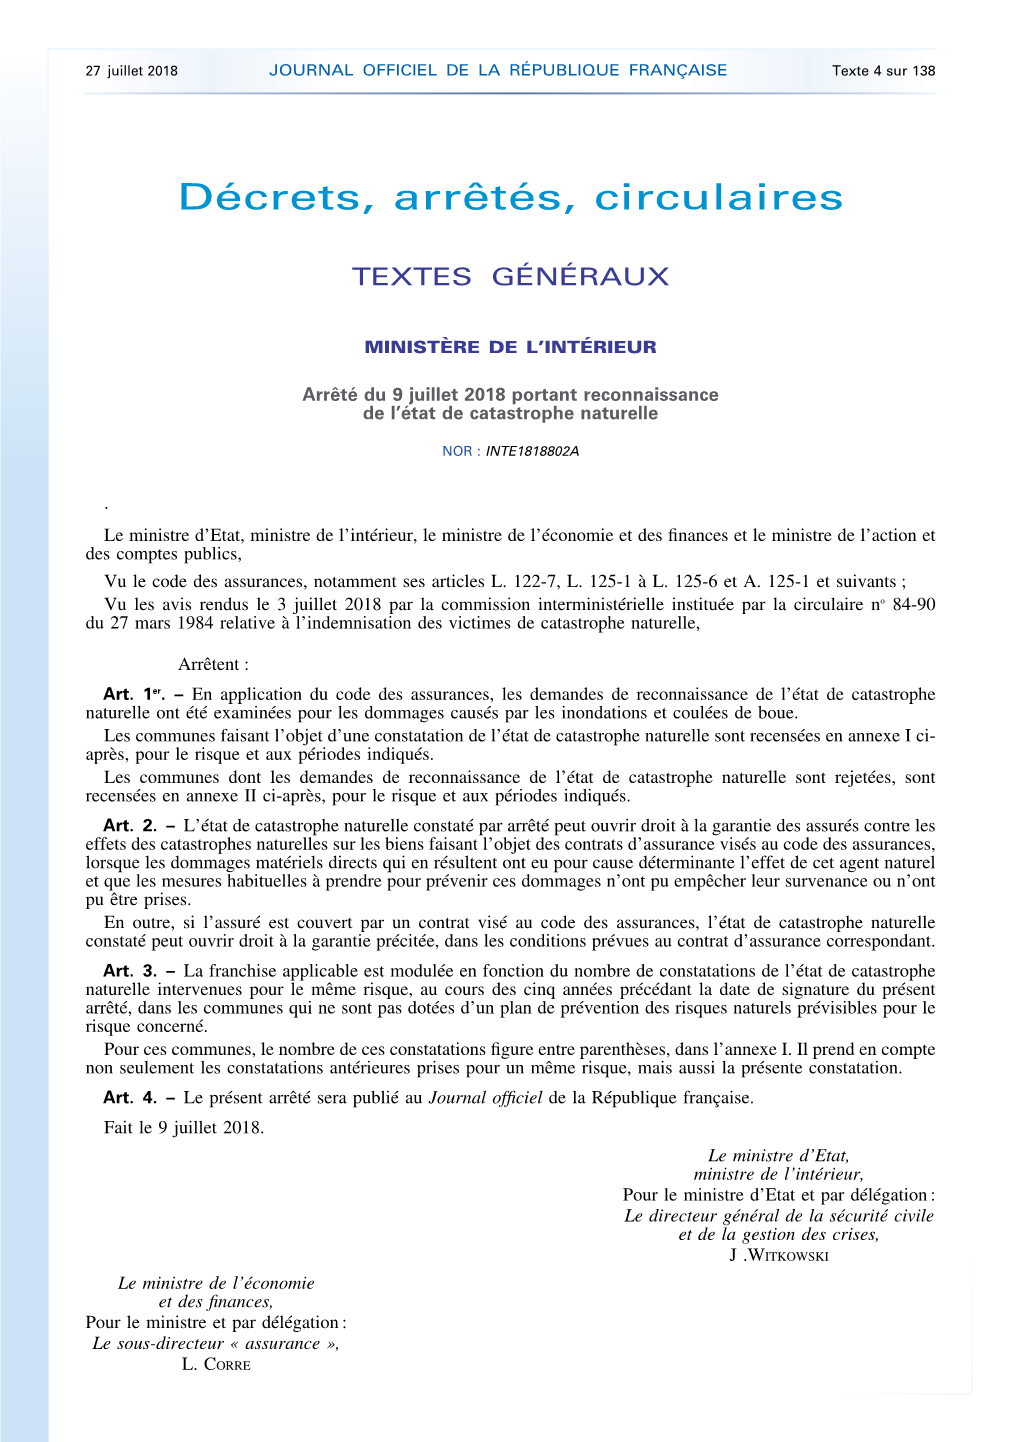 JOURNAL OFFICIEL DE LA RÉPUBLIQUE FRANÇAISE Texte 4 Sur 138